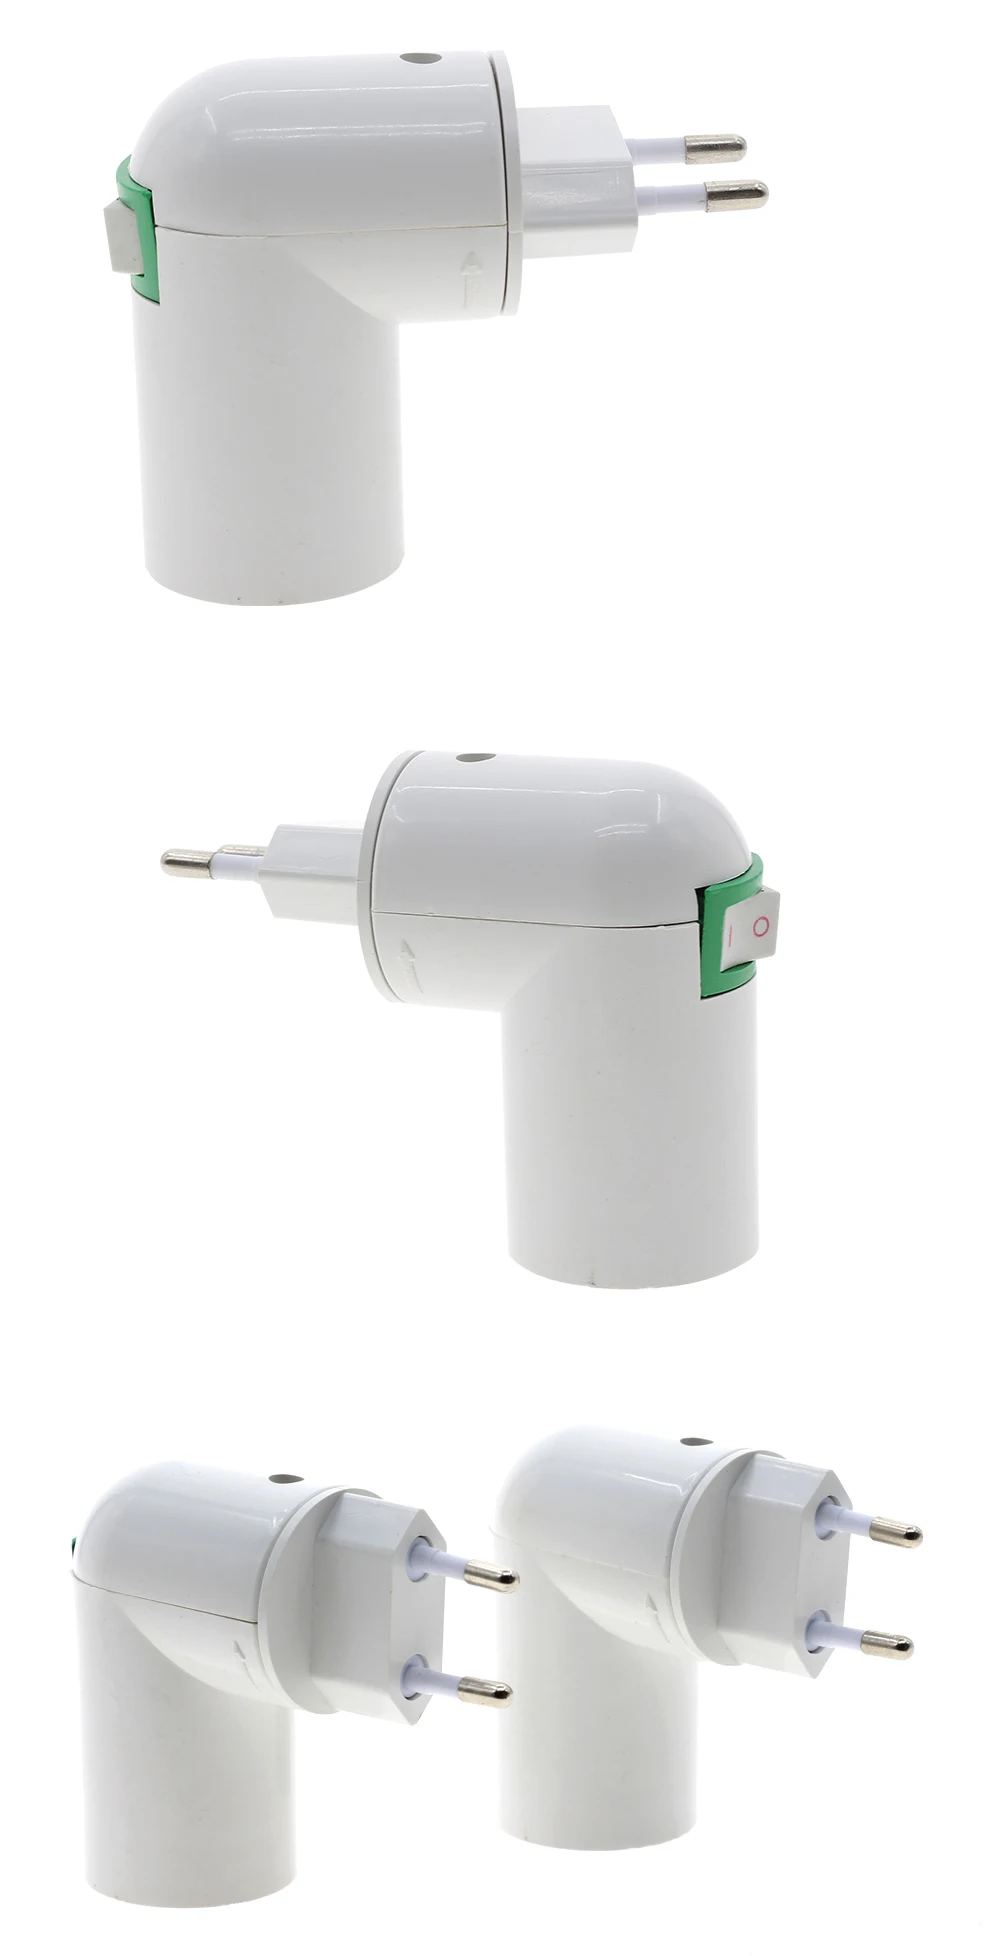 E27 ЕС Plug световая база с лампами 180 градусов Поворот лампы адаптер конвертер лампы держатель с включения/выключения